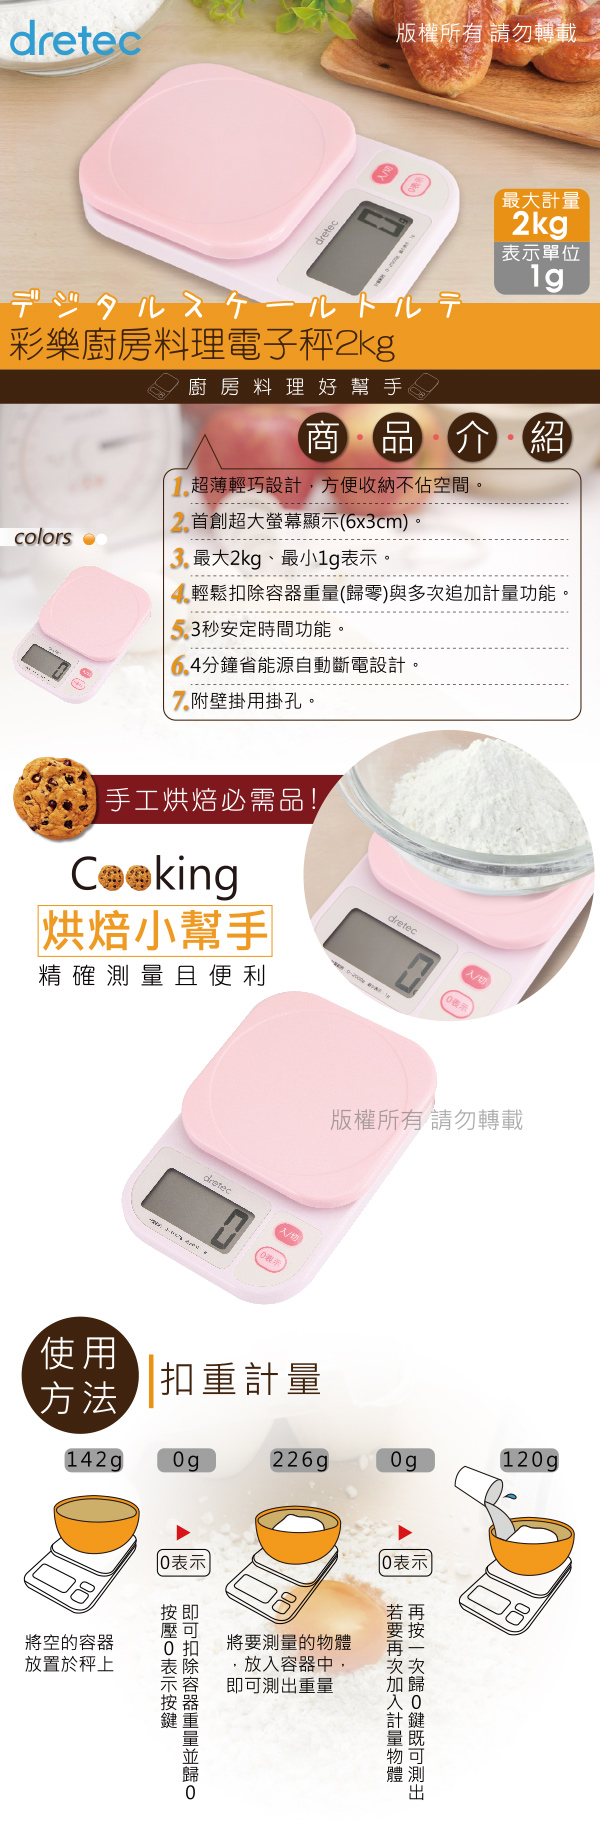 dretec 彩樂廚房料理電子秤2kg 粉